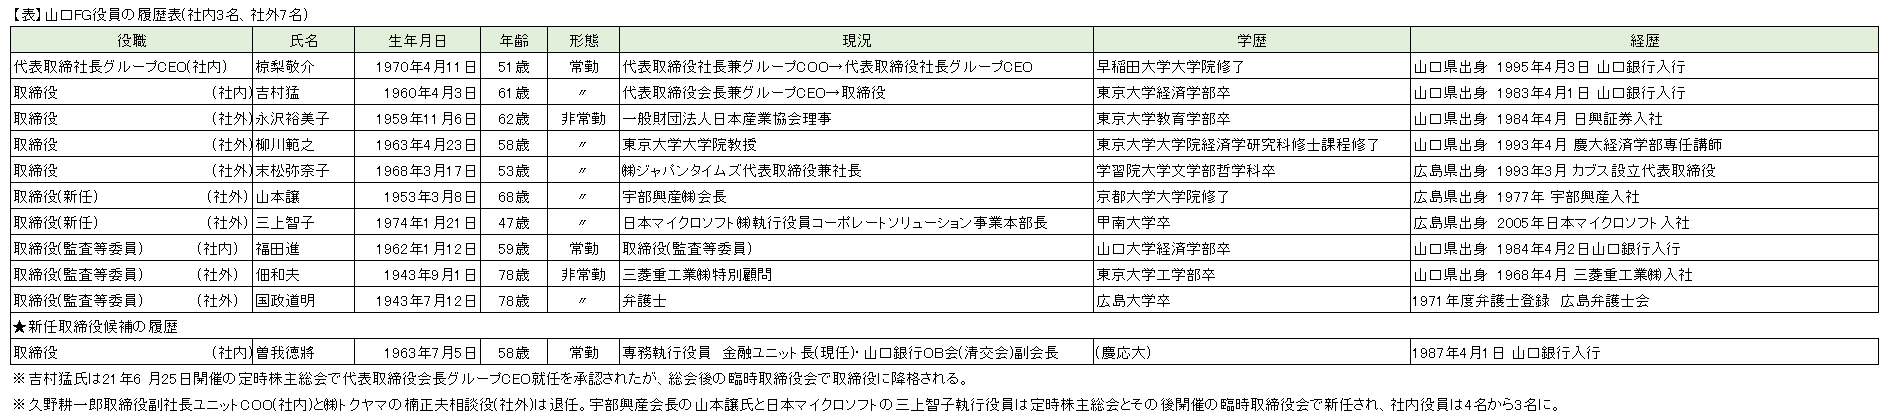 【表】山口FG役員の履歴表(社内3名、社外7名)